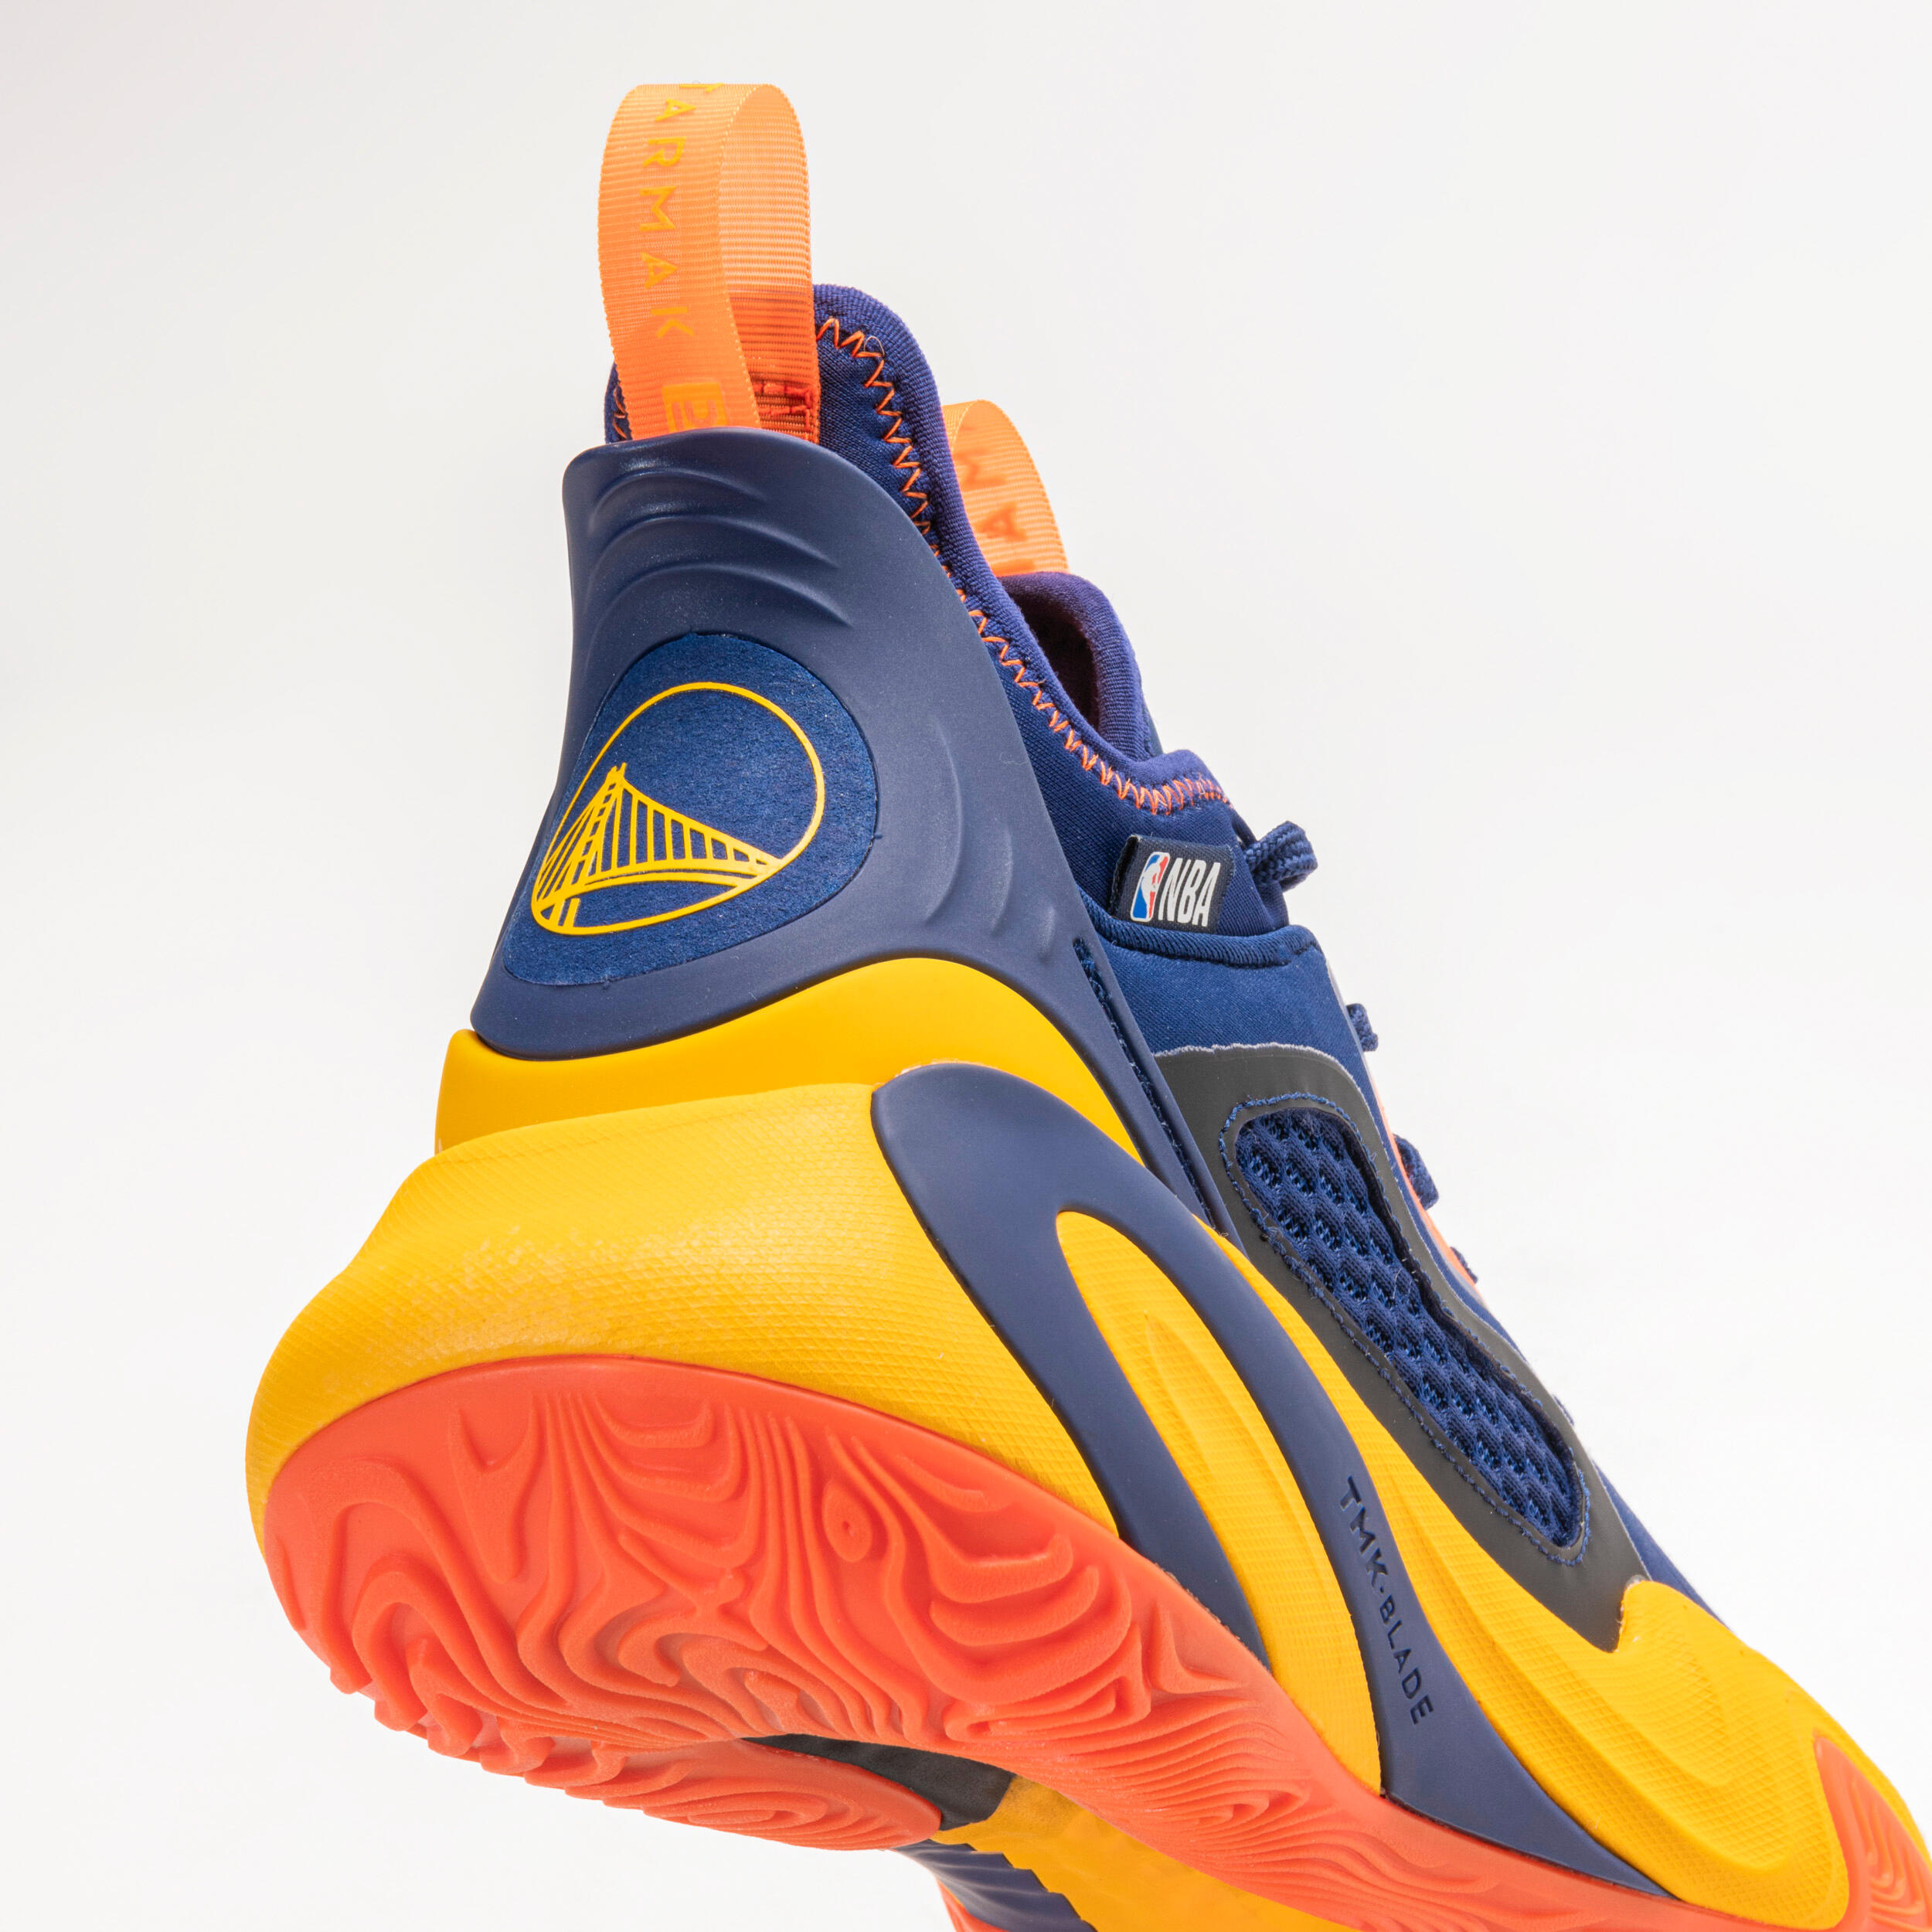 Men's/Women's Basketball Shoes SE900 - Blue/NBA Golden State Warriors 5/11